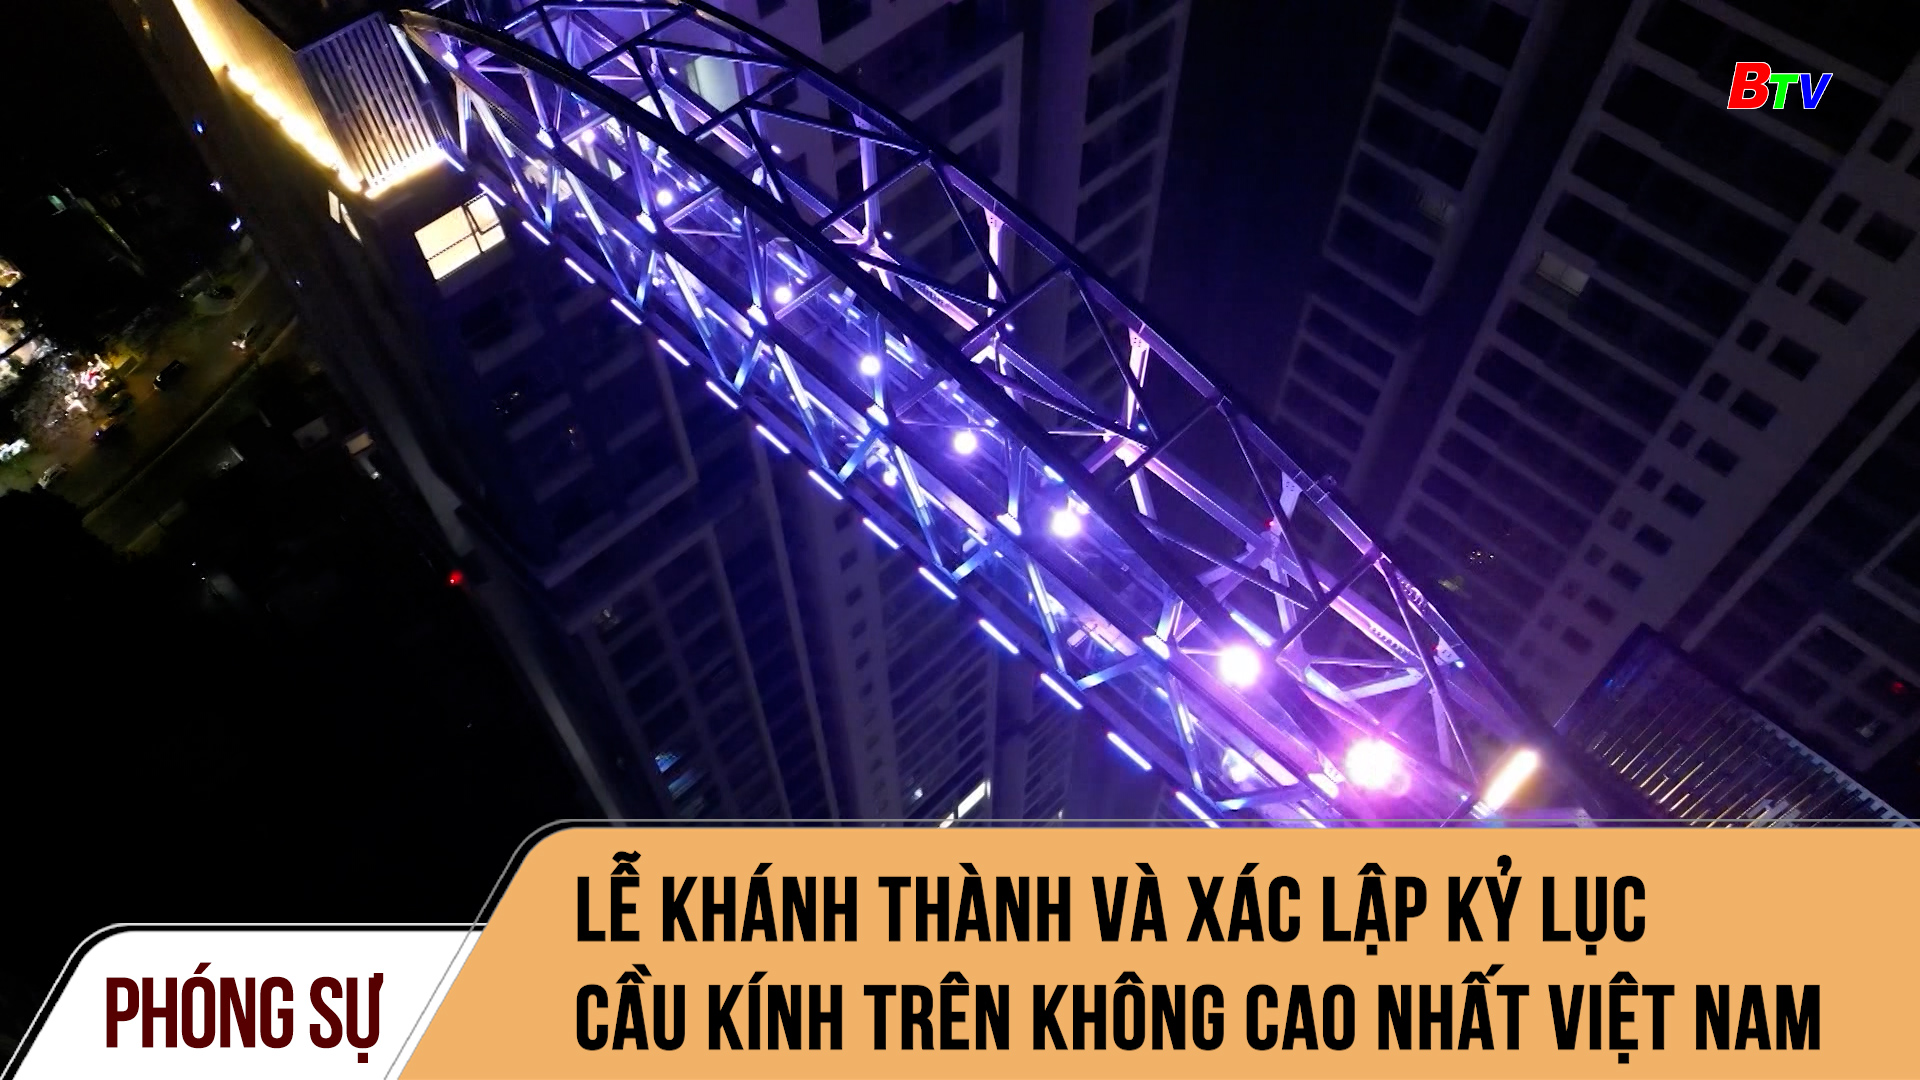 Lễ khánh thành và xác lập kỷ lục cầu kính trên không cao nhất Việt Nam 